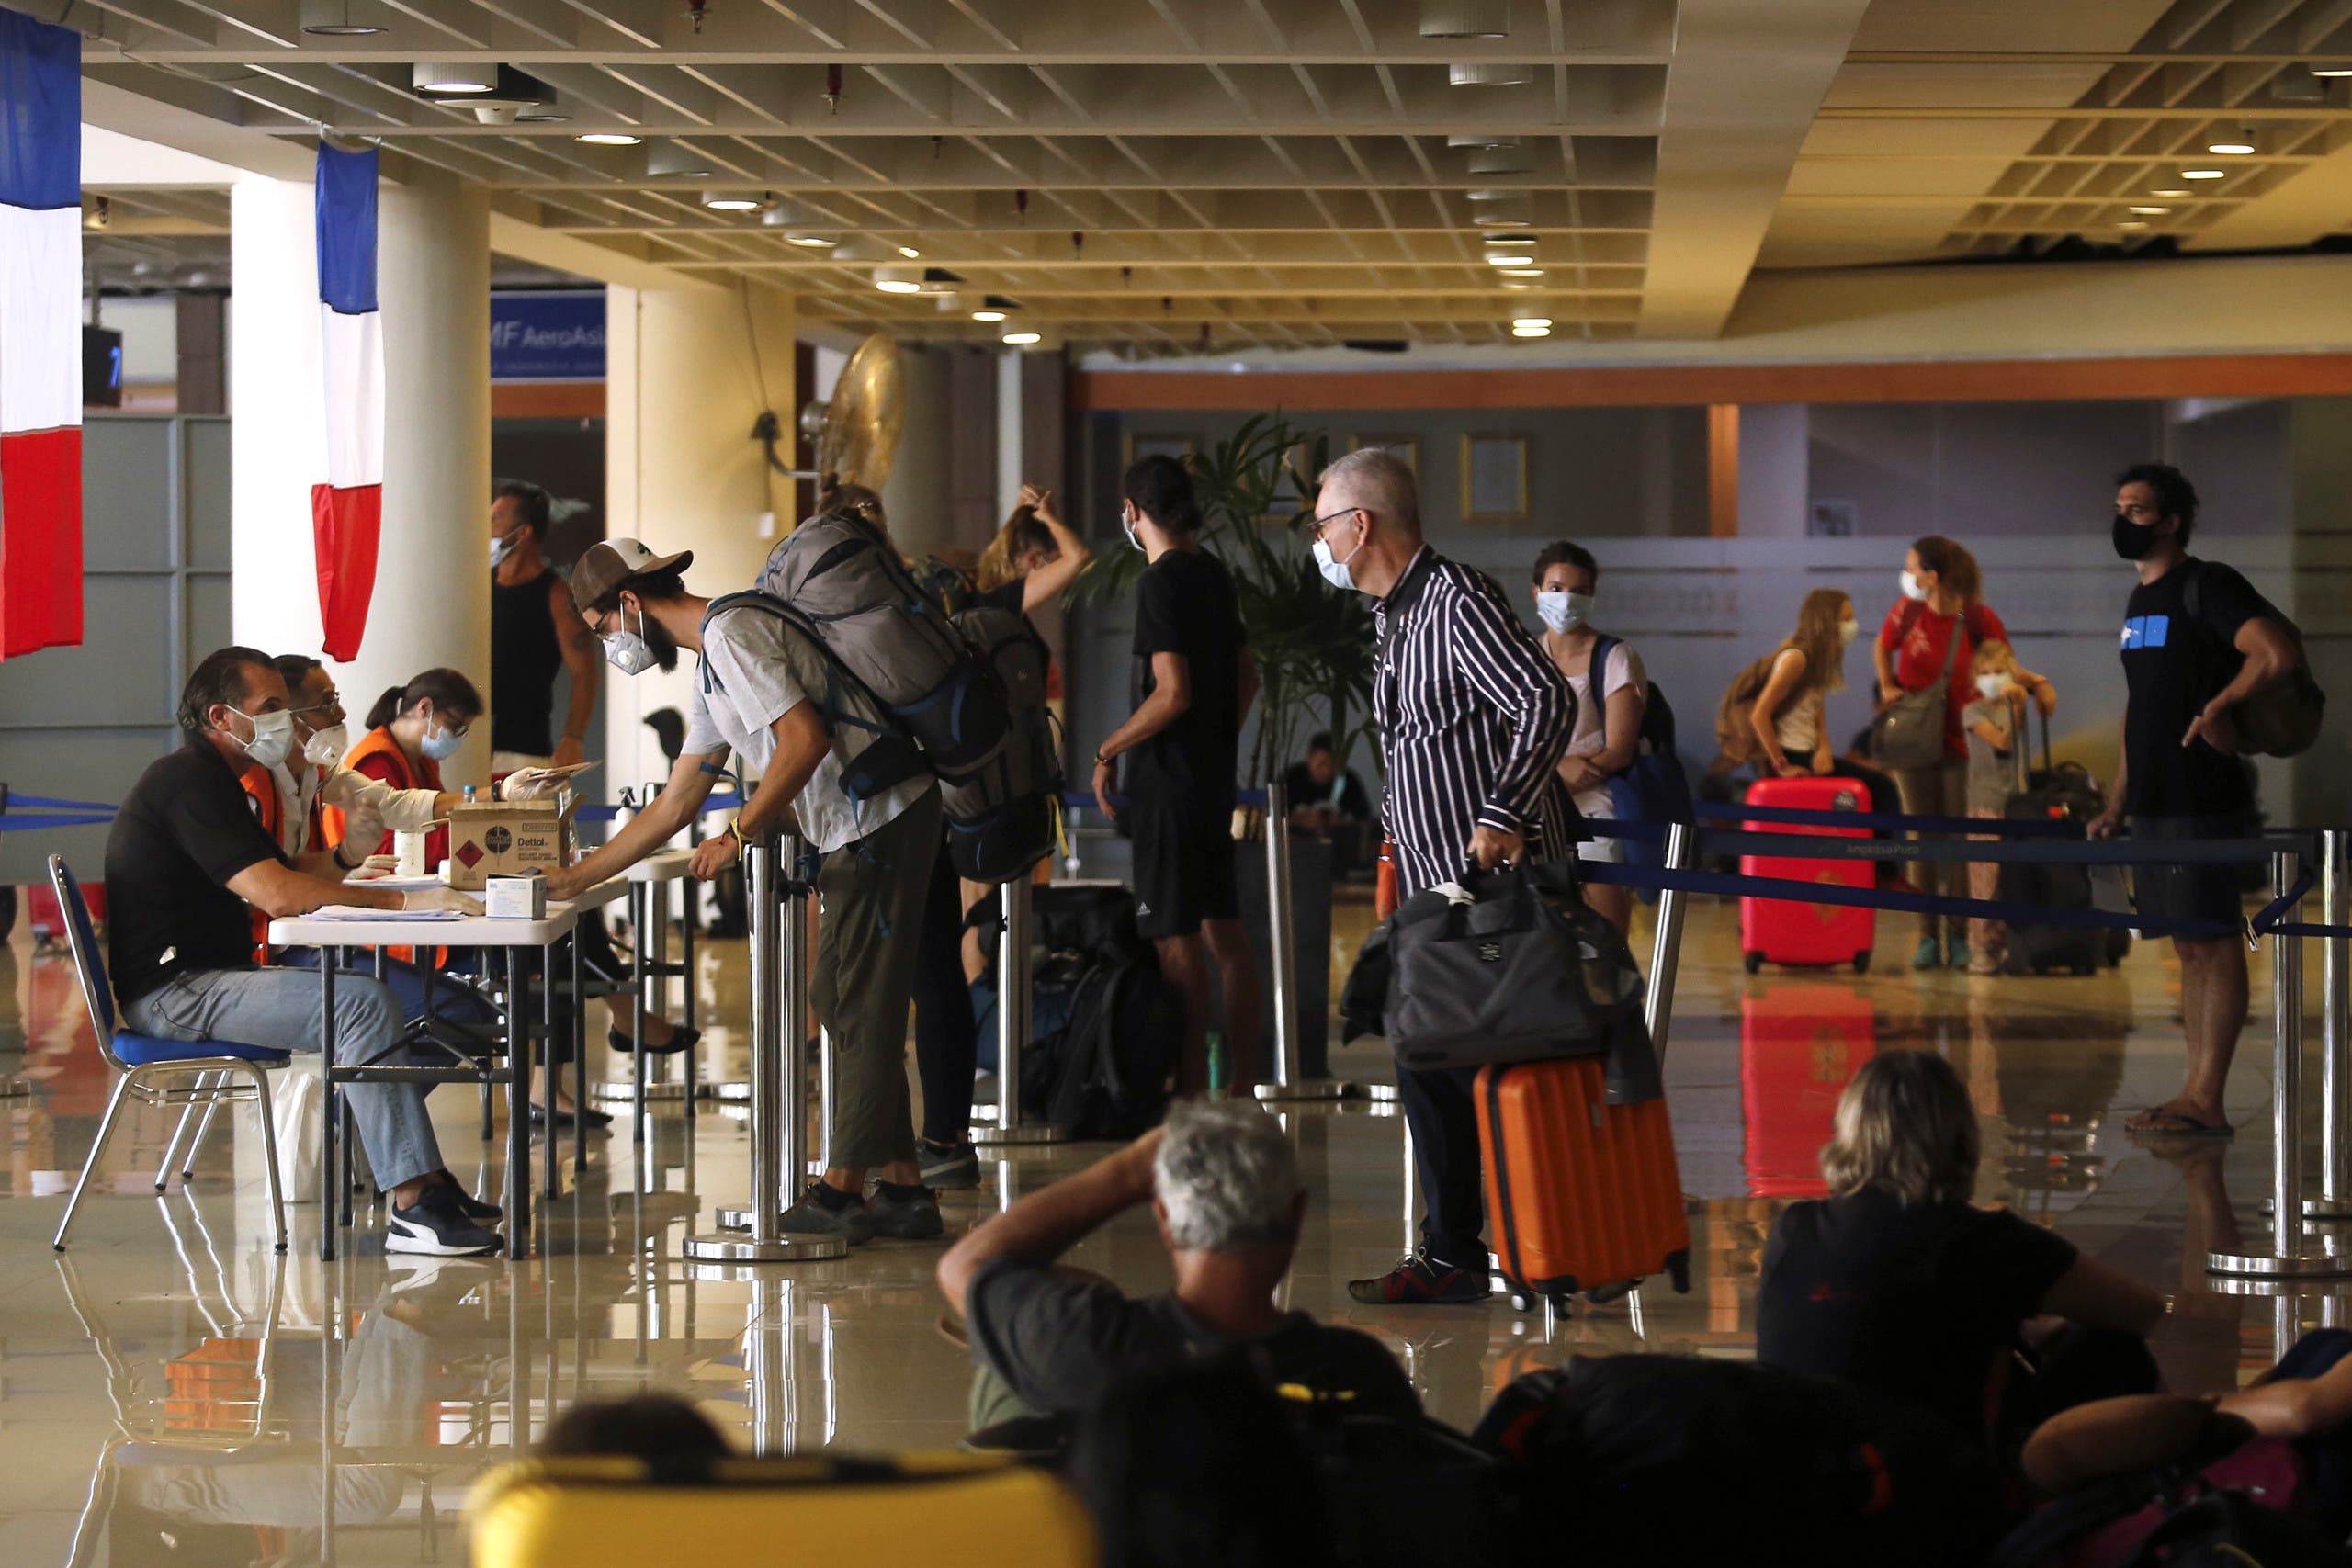 فرنسيون يهرعون للتسجيل عند موظف القنصلية الفرنسية في مطار بالي استعداداً للإجلاء من الجزيرة